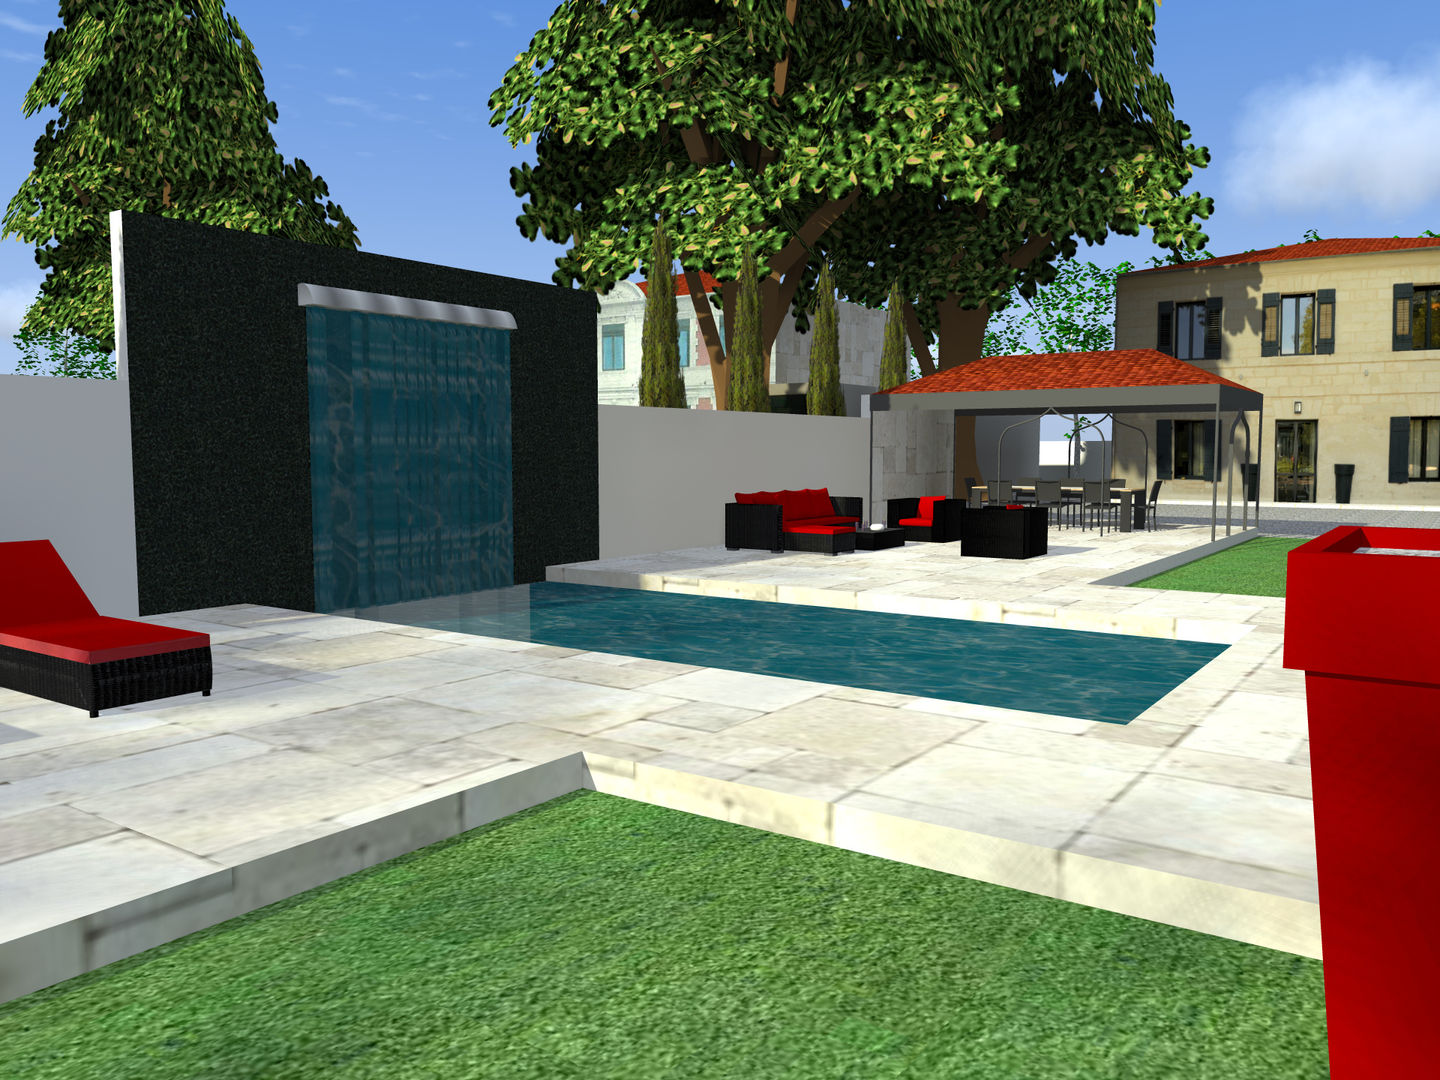 Création d'une piscine en 2 espaces distincts, AZ Createur d'intérieur AZ Createur d'intérieur Pool